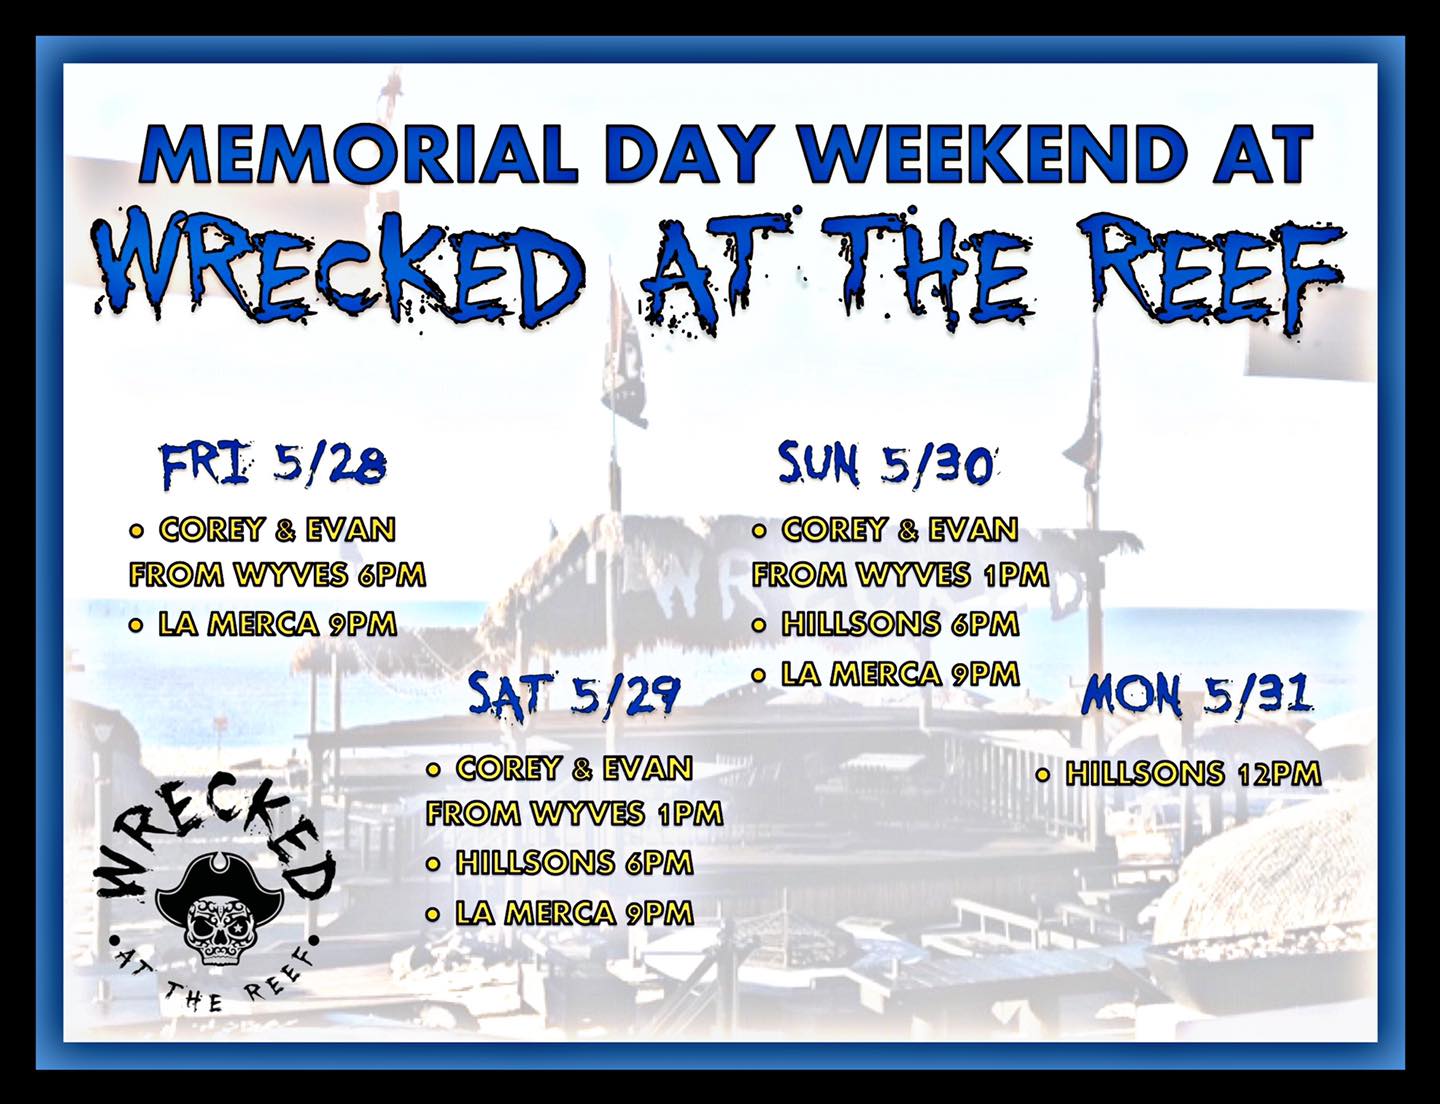 The-reef-memorial-weekend-21 Wrecked at The Reef Memorial Day Weekend Music